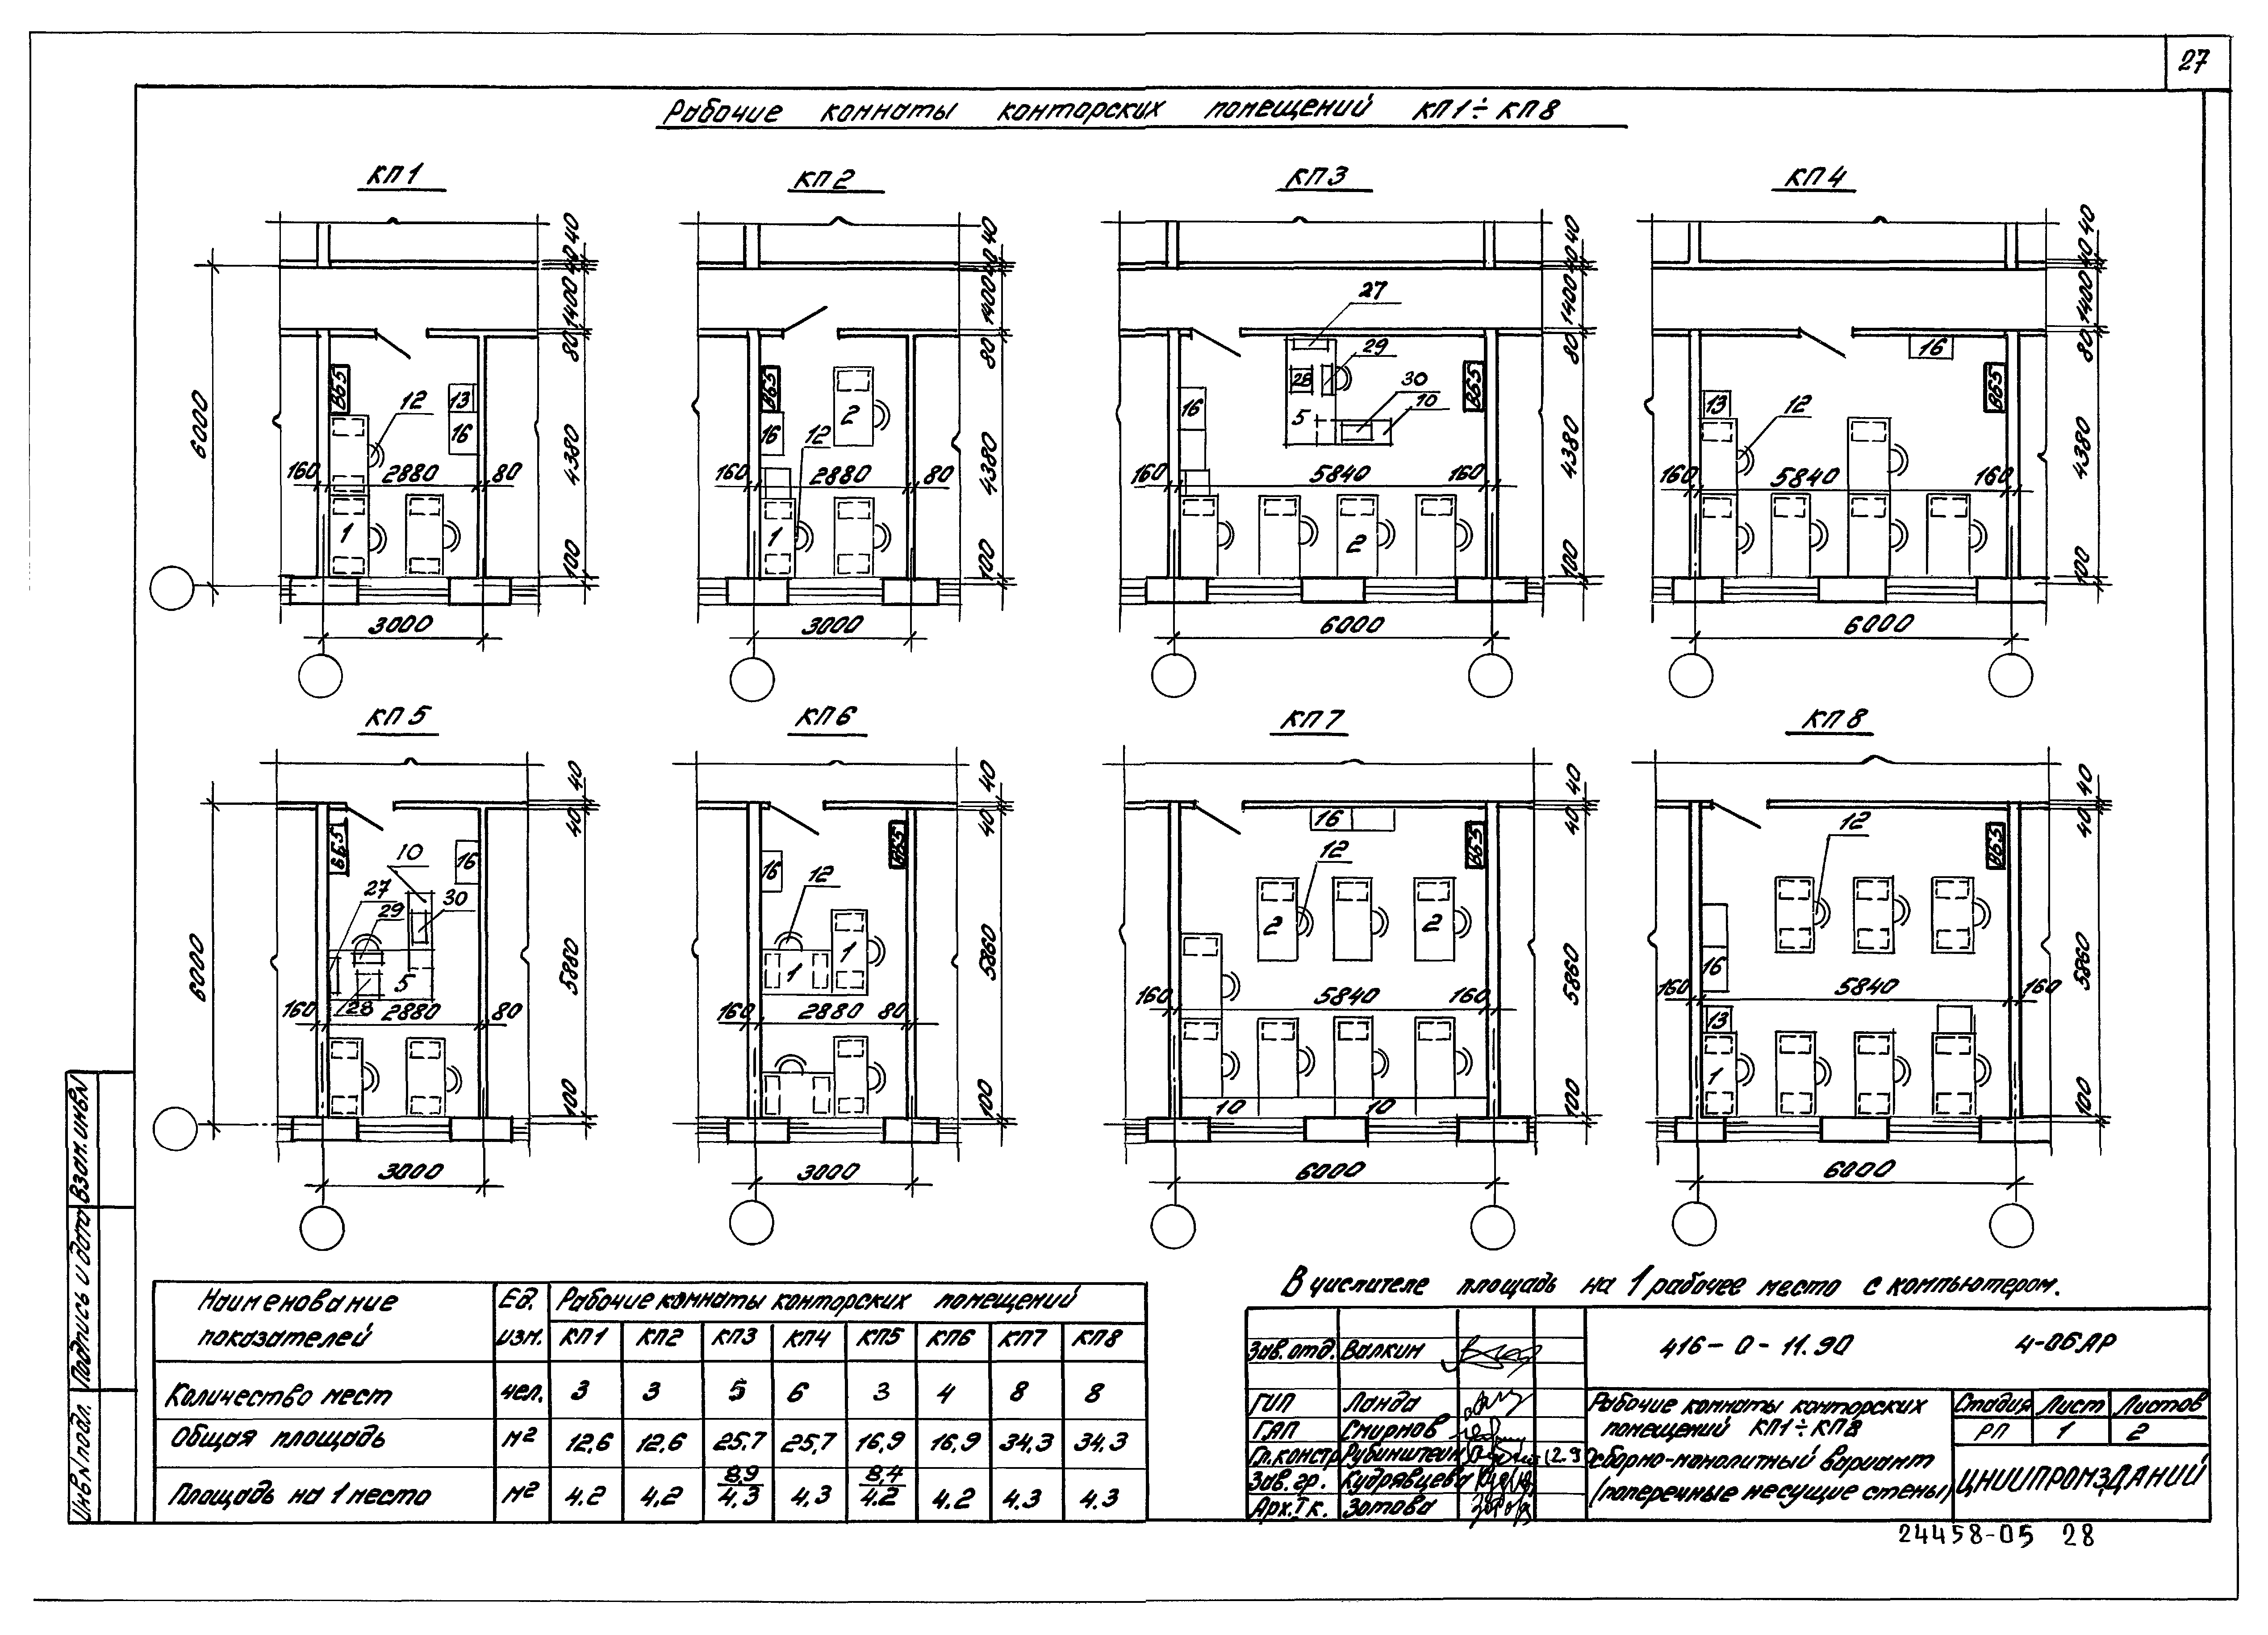 Типовые материалы для проектирования 416-0-11.90